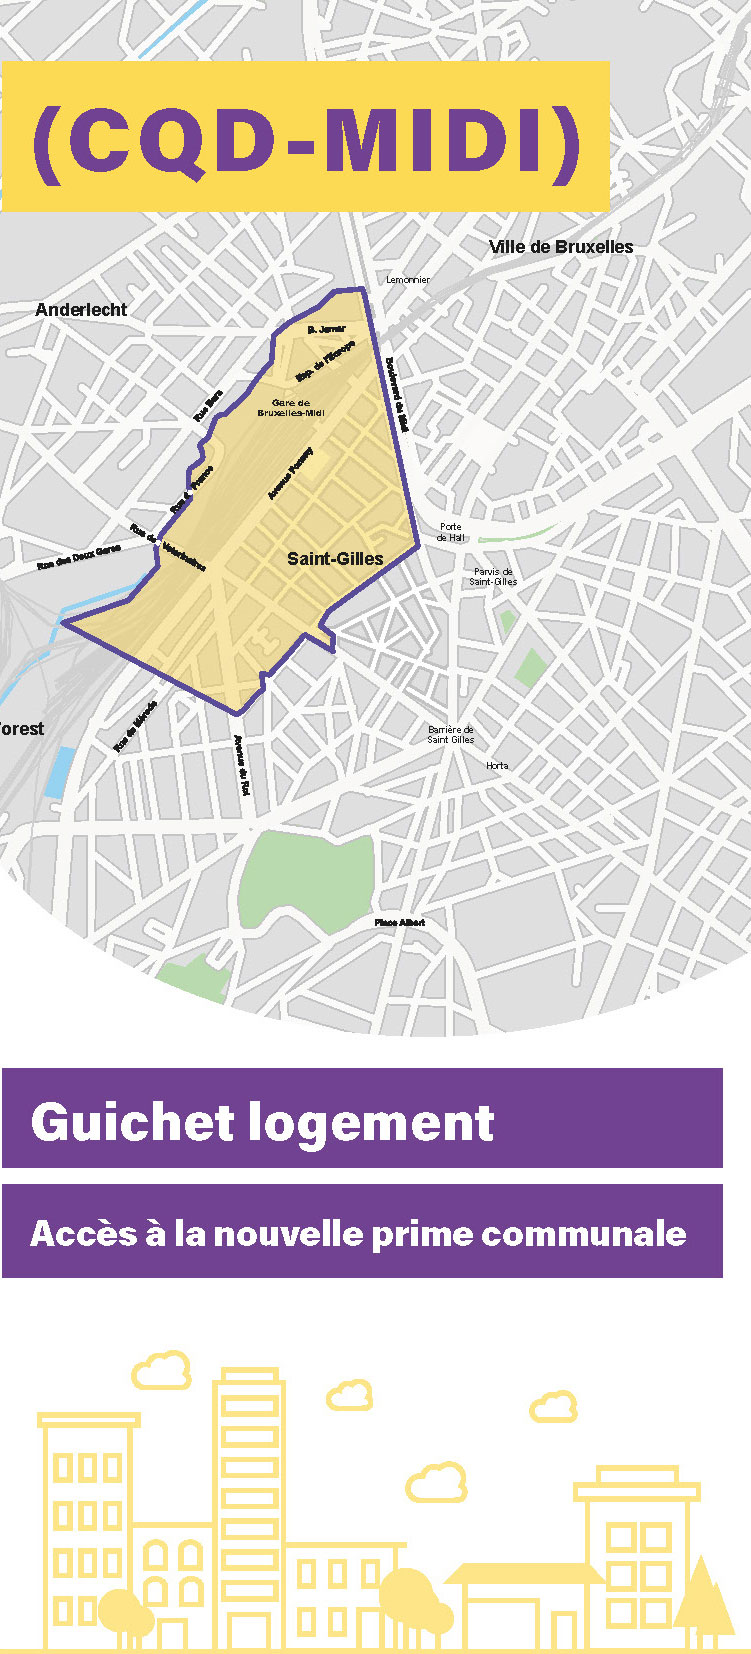 Guichet logement : Accès à la nouvelle prime communale